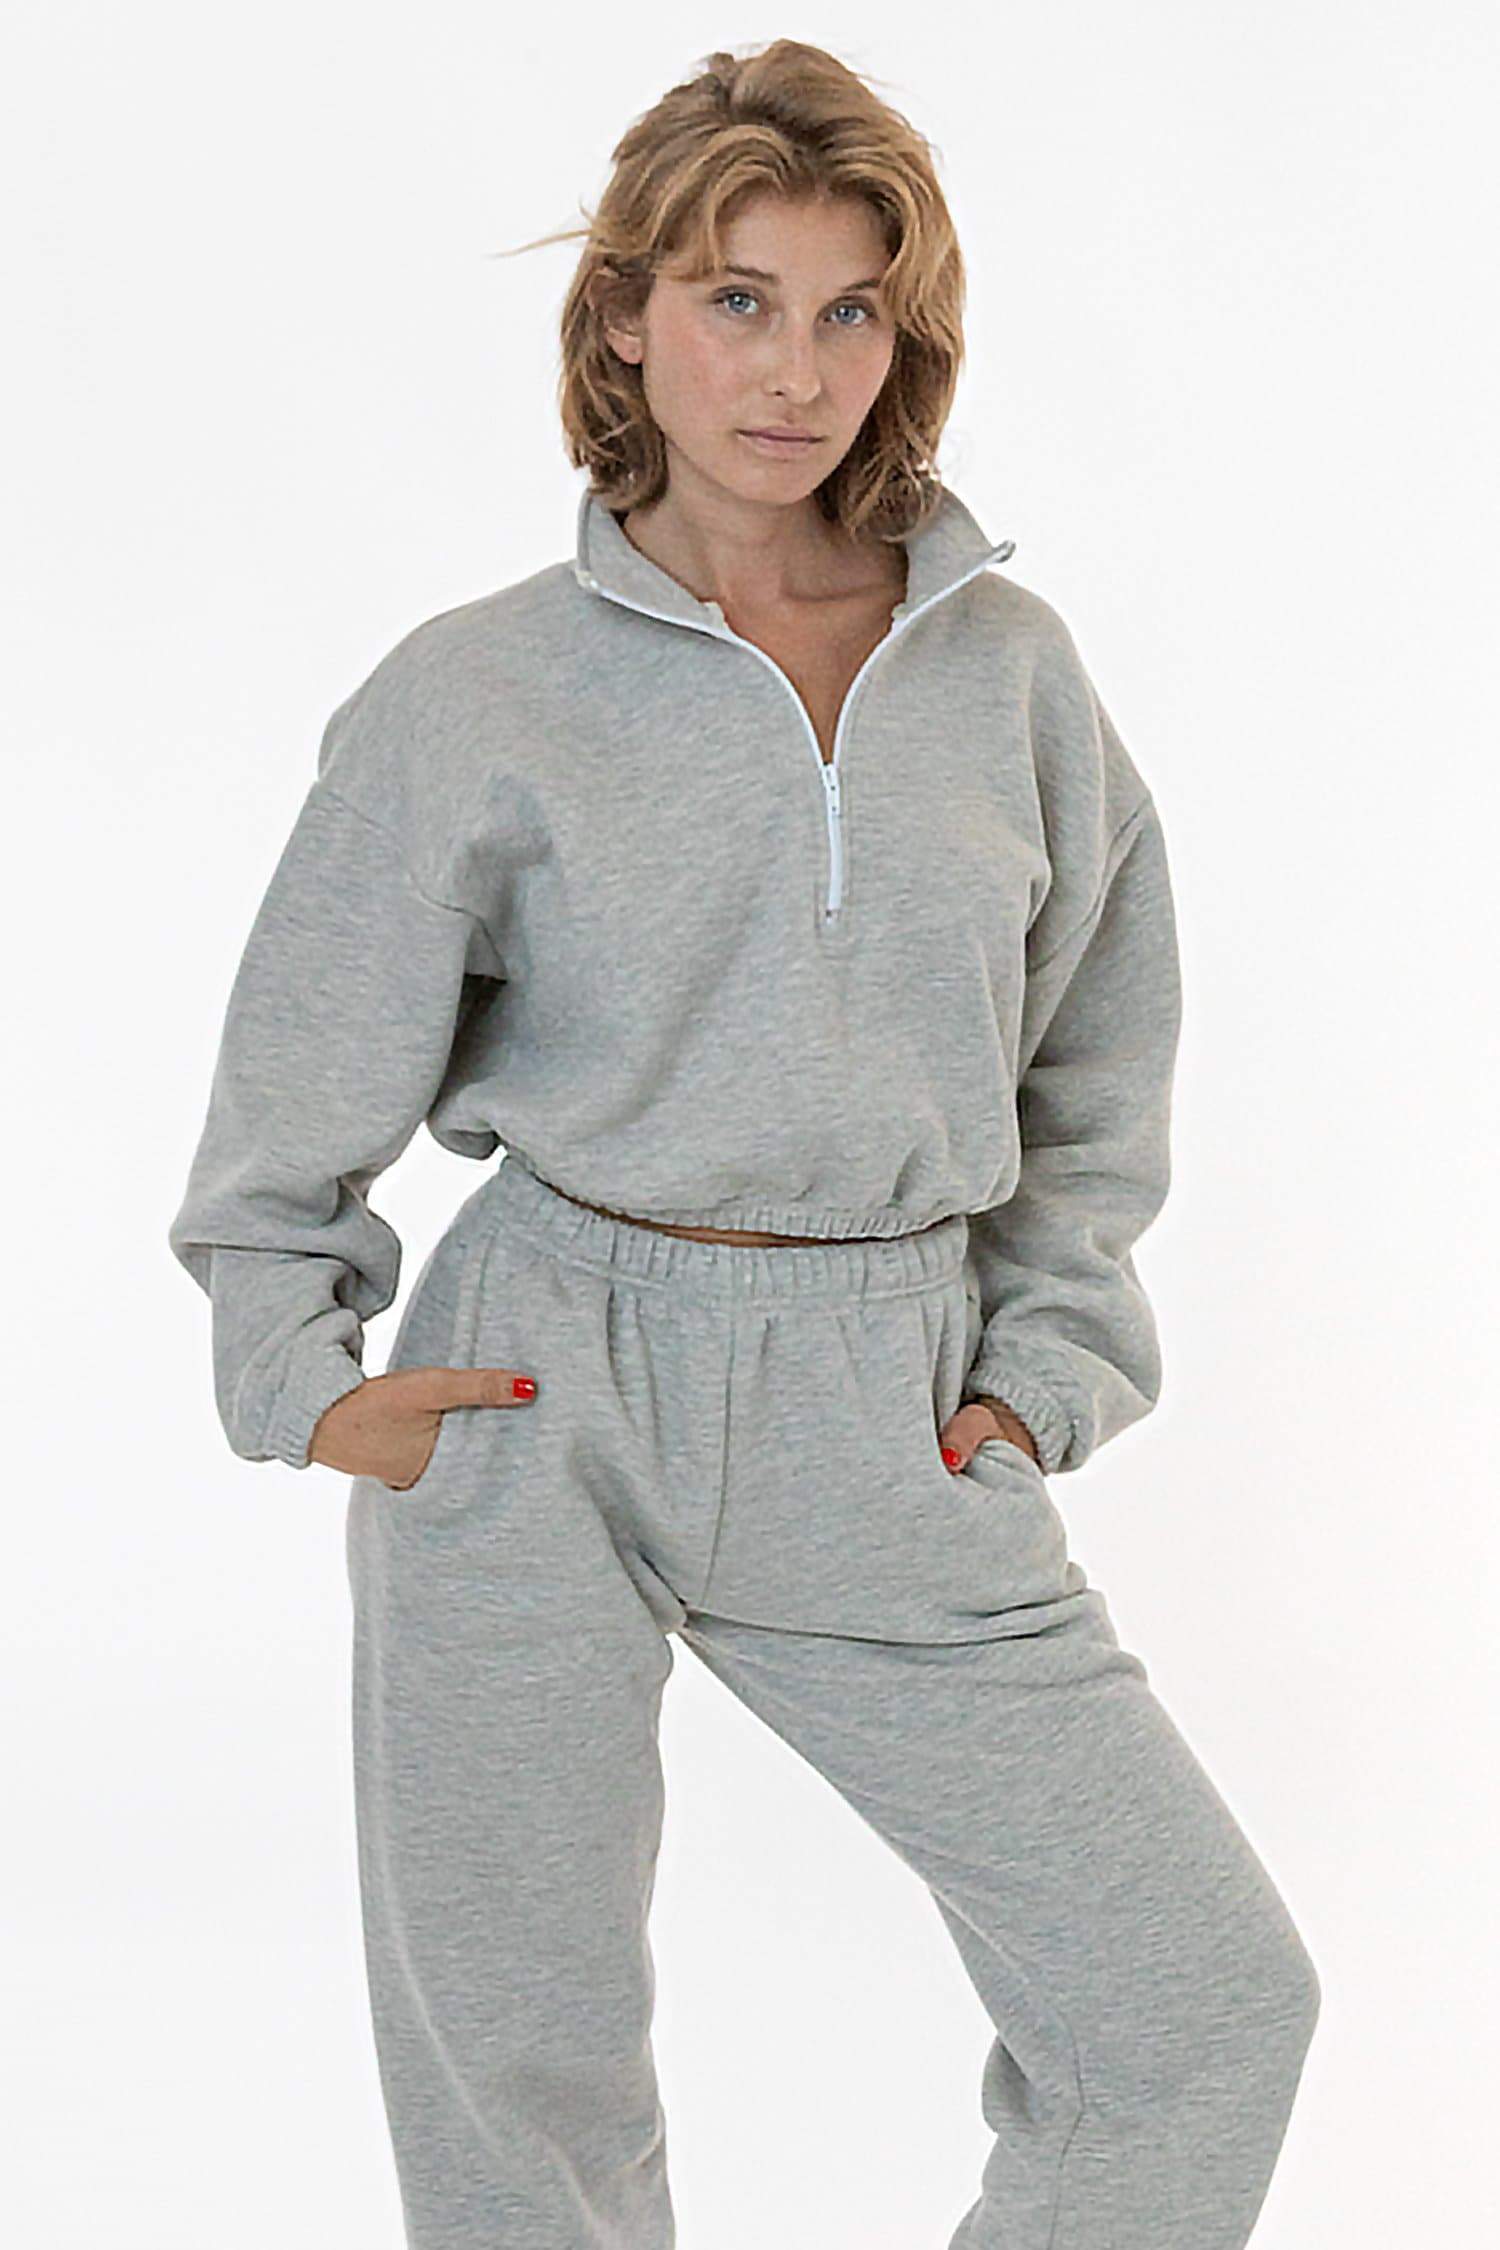 Spyder Women's Size S/P Long Sleeve Gray Soft Fleece Pullover Shirt Top  RN#63619